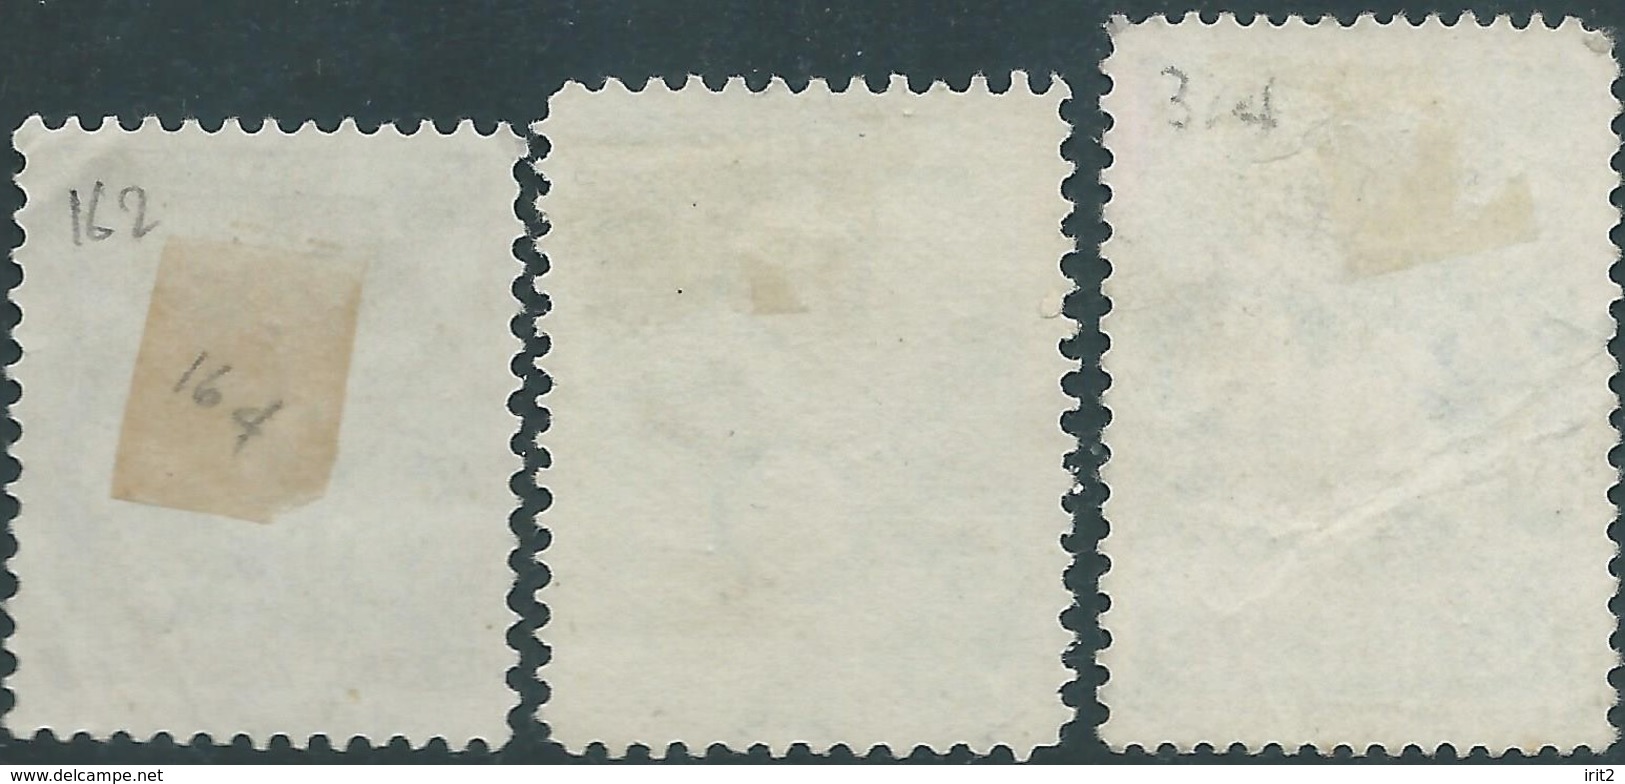 OLANDA-HOLLAND-NEDERLAND 1925-1928-1938 , 25c-2+(2)c-5+(3)c , Not Used,Hinged-Stampworld Value€10,50 - Neufs